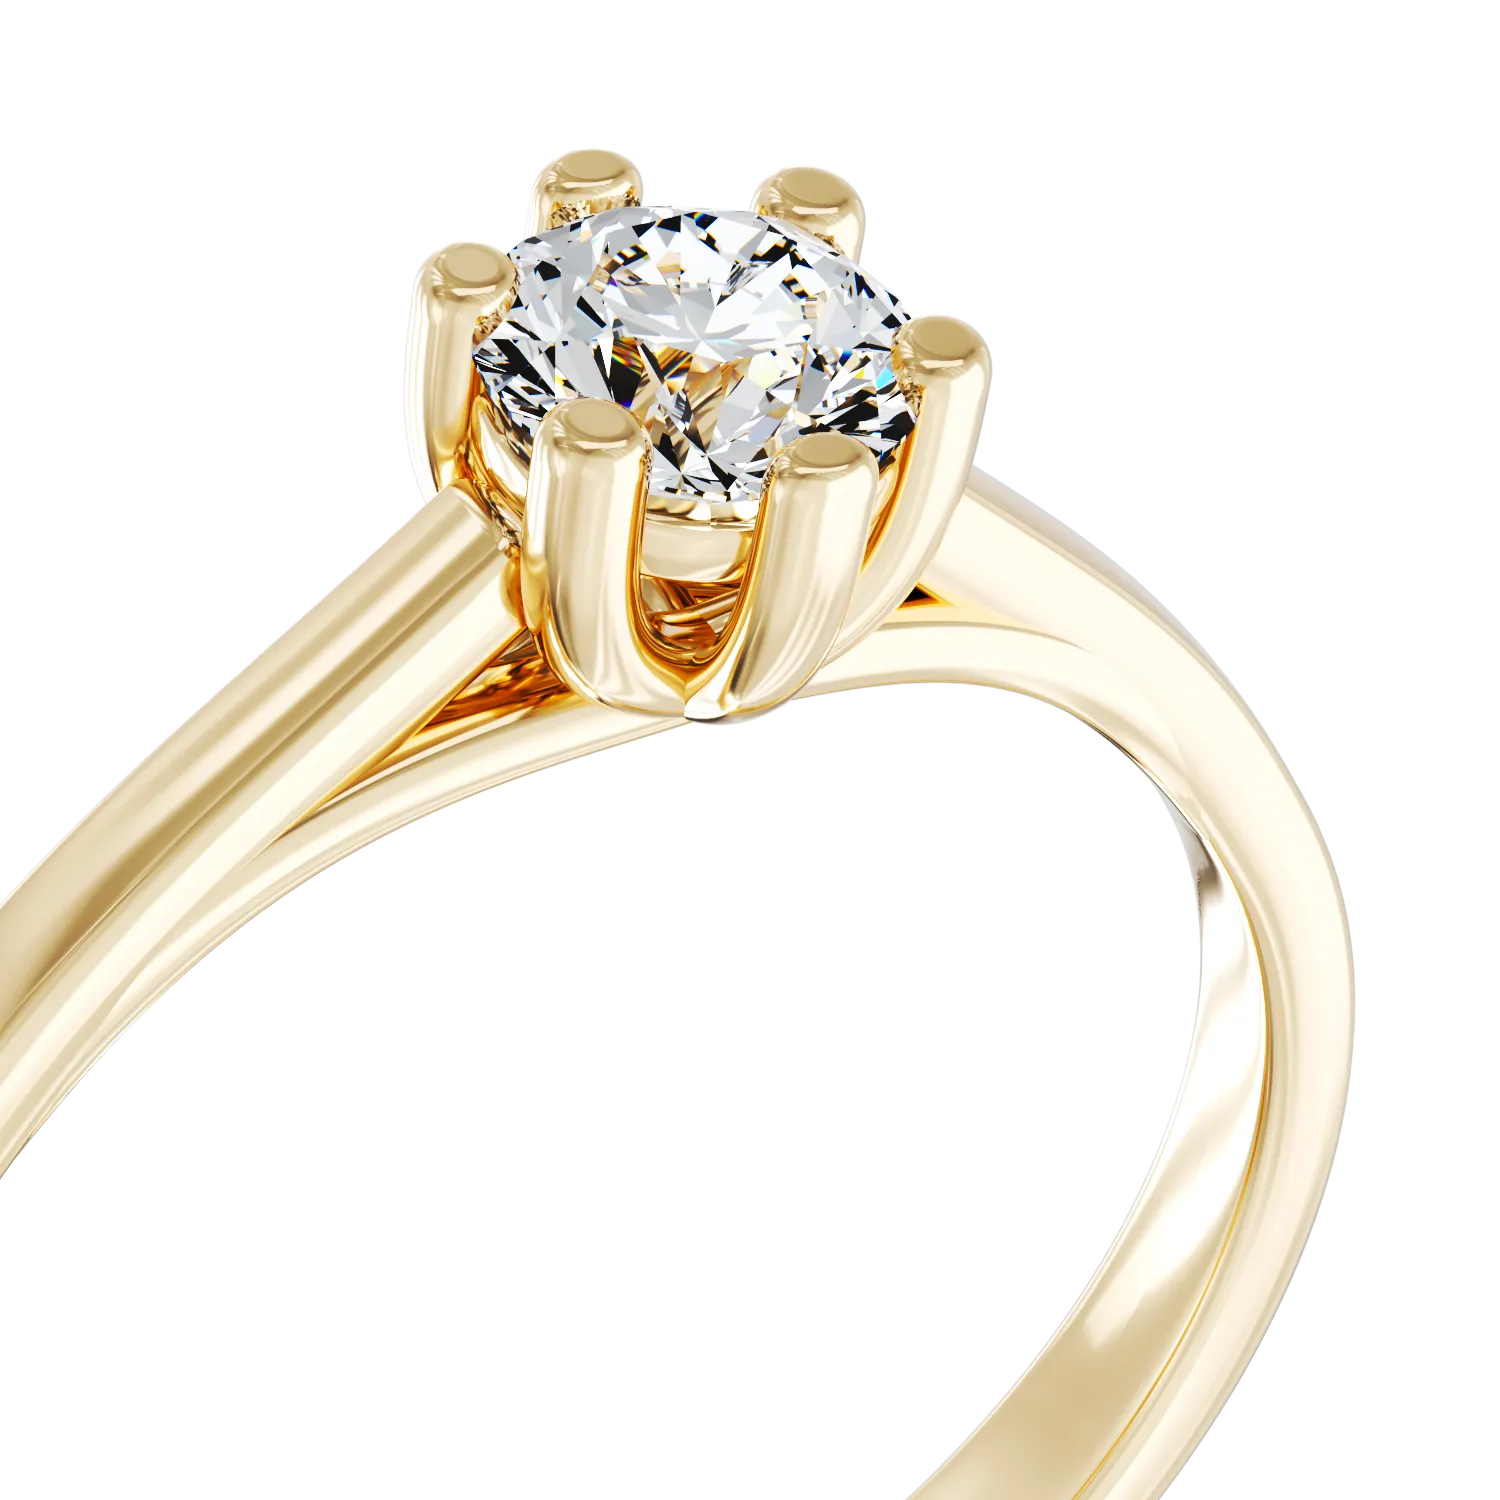 Eljegyzési gyűrű 18K-os sárga aranyból 0,15ct gyémánttal. Gramm: 3,5